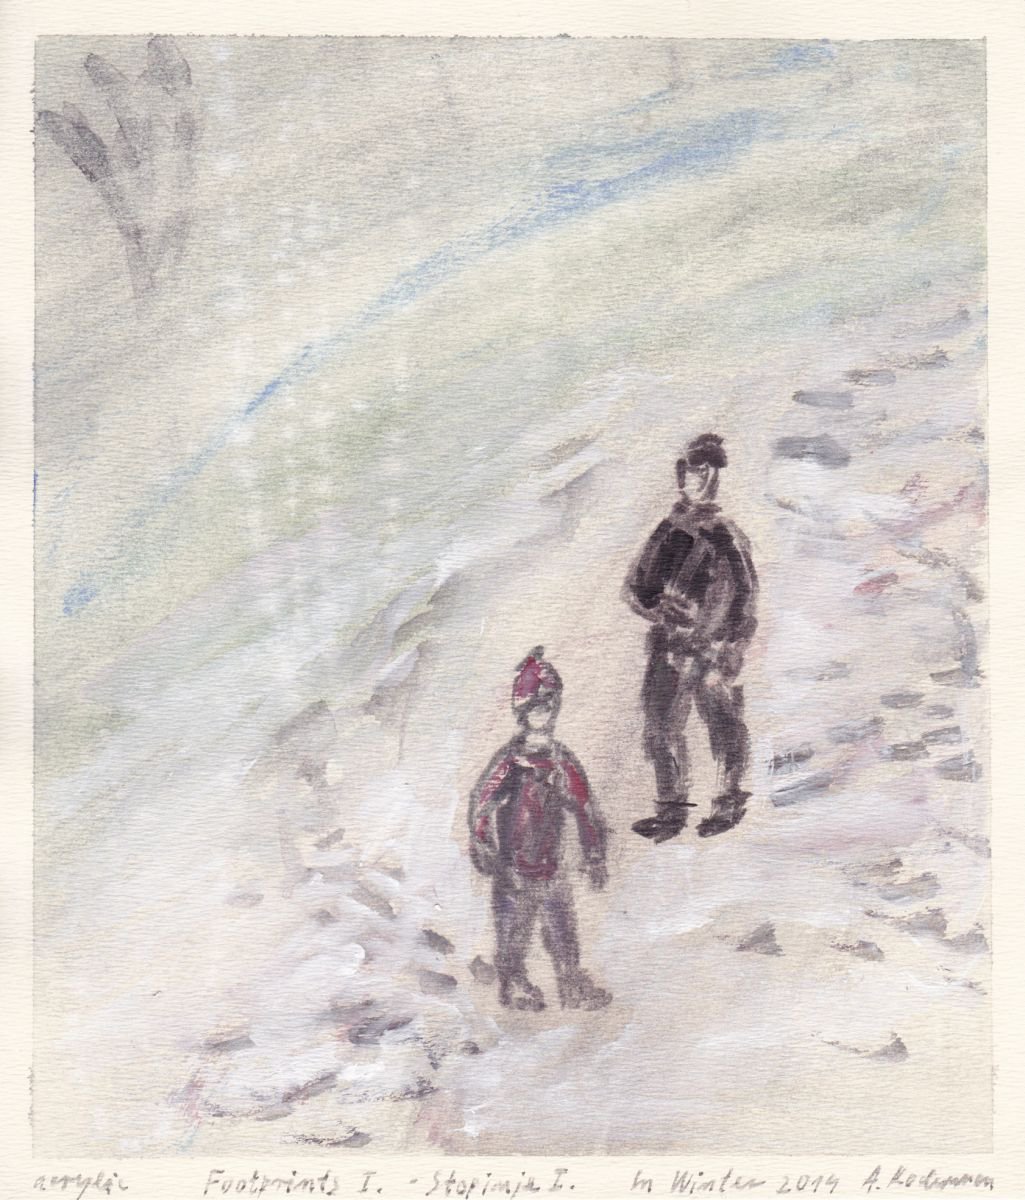 Footprints I. - Stopinje I., In Winter 2014, acrylic on paper by Alenka Koderman